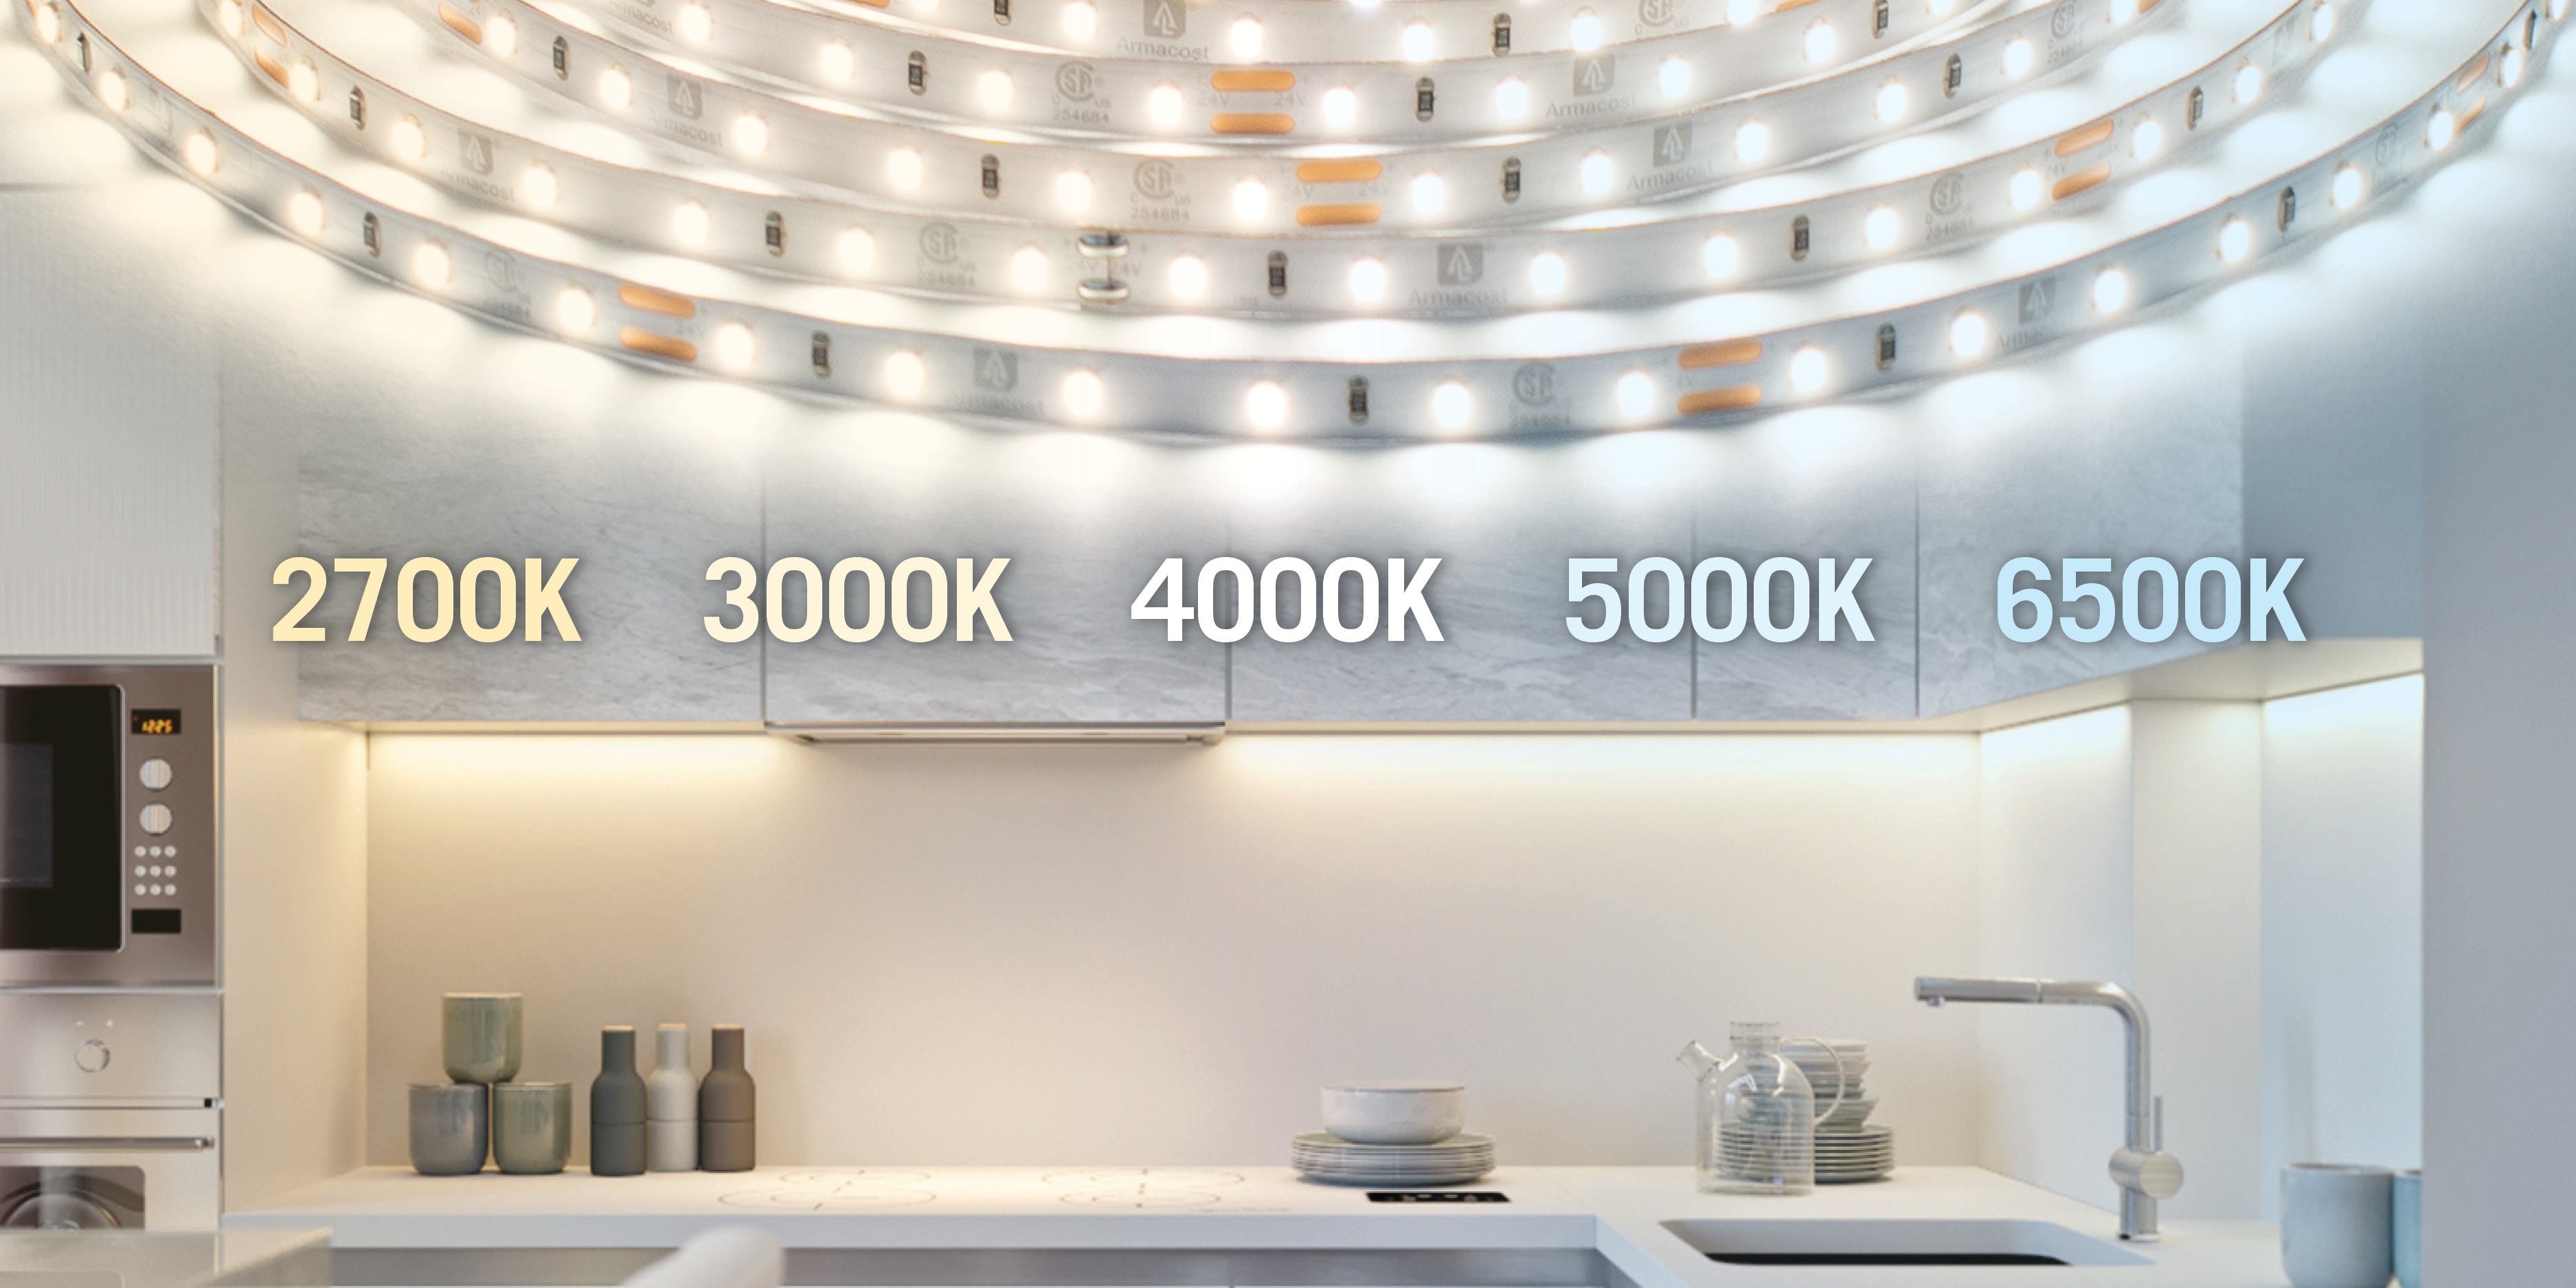 4000k light for kitchen